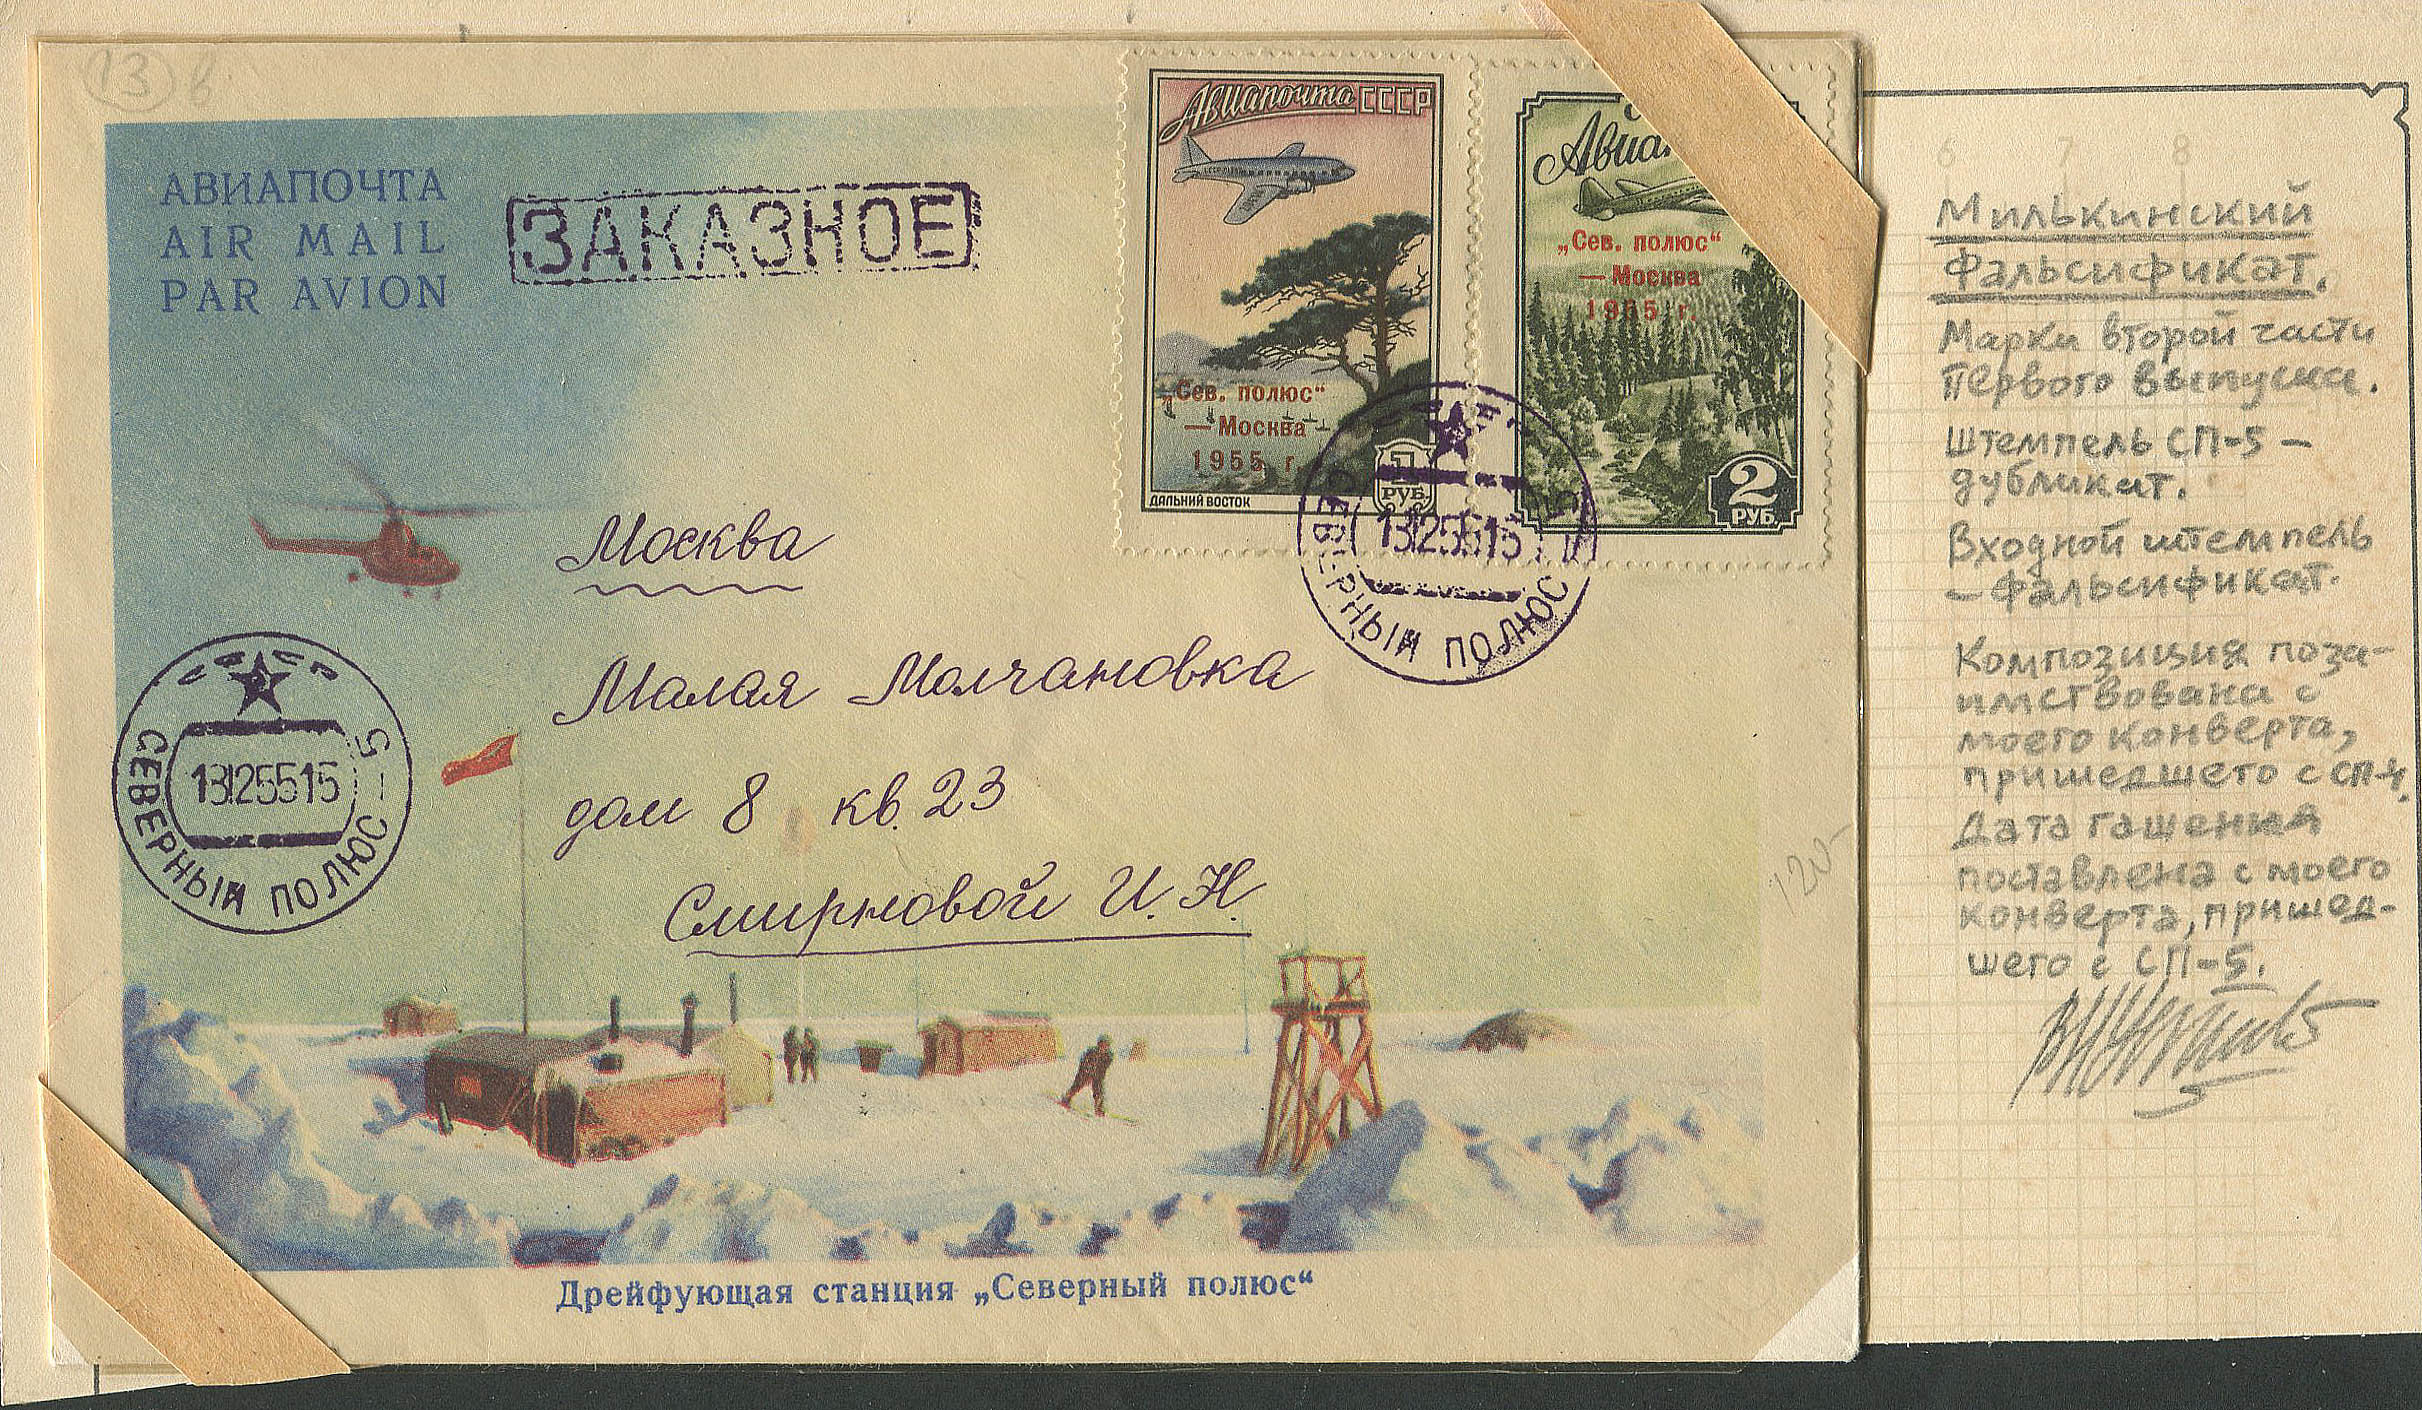 Лот 0369 - Милькинский фальсификат заказного письма со станции 'СП-5' для продажи за рубеж